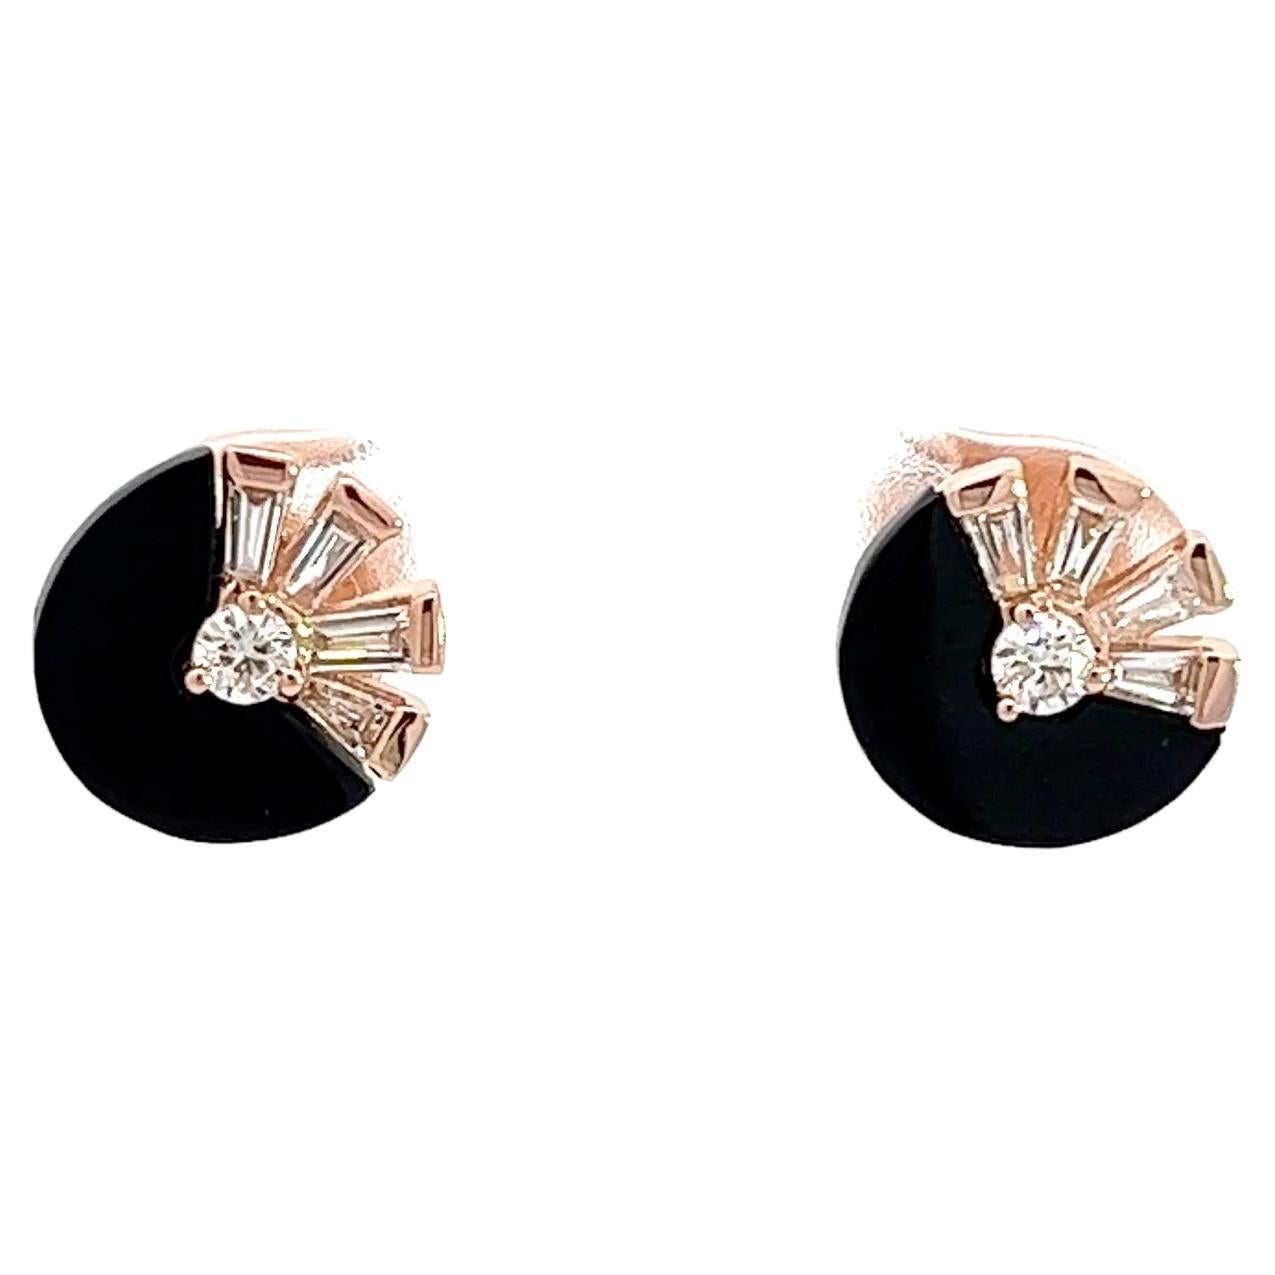 Ohrringe aus Onyx und Roségold mit Diamanten von Eternelle für ihr